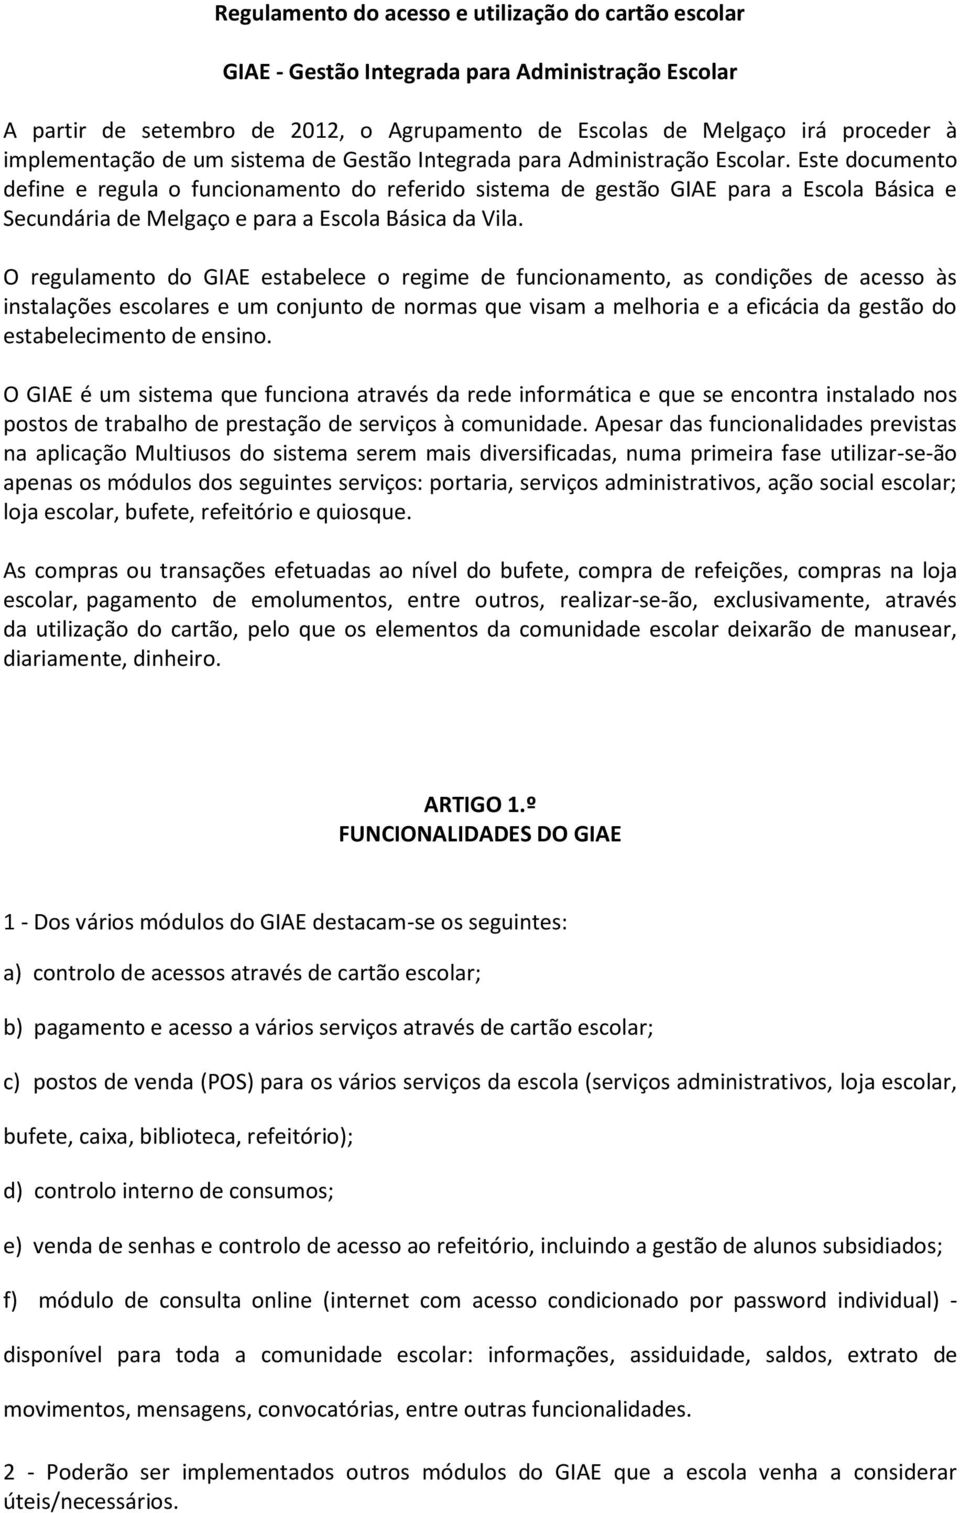 Este documento define e regula o funcionamento do referido sistema de gestão GIAE para a Escola Básica e Secundária de Melgaço e para a Escola Básica da Vila.